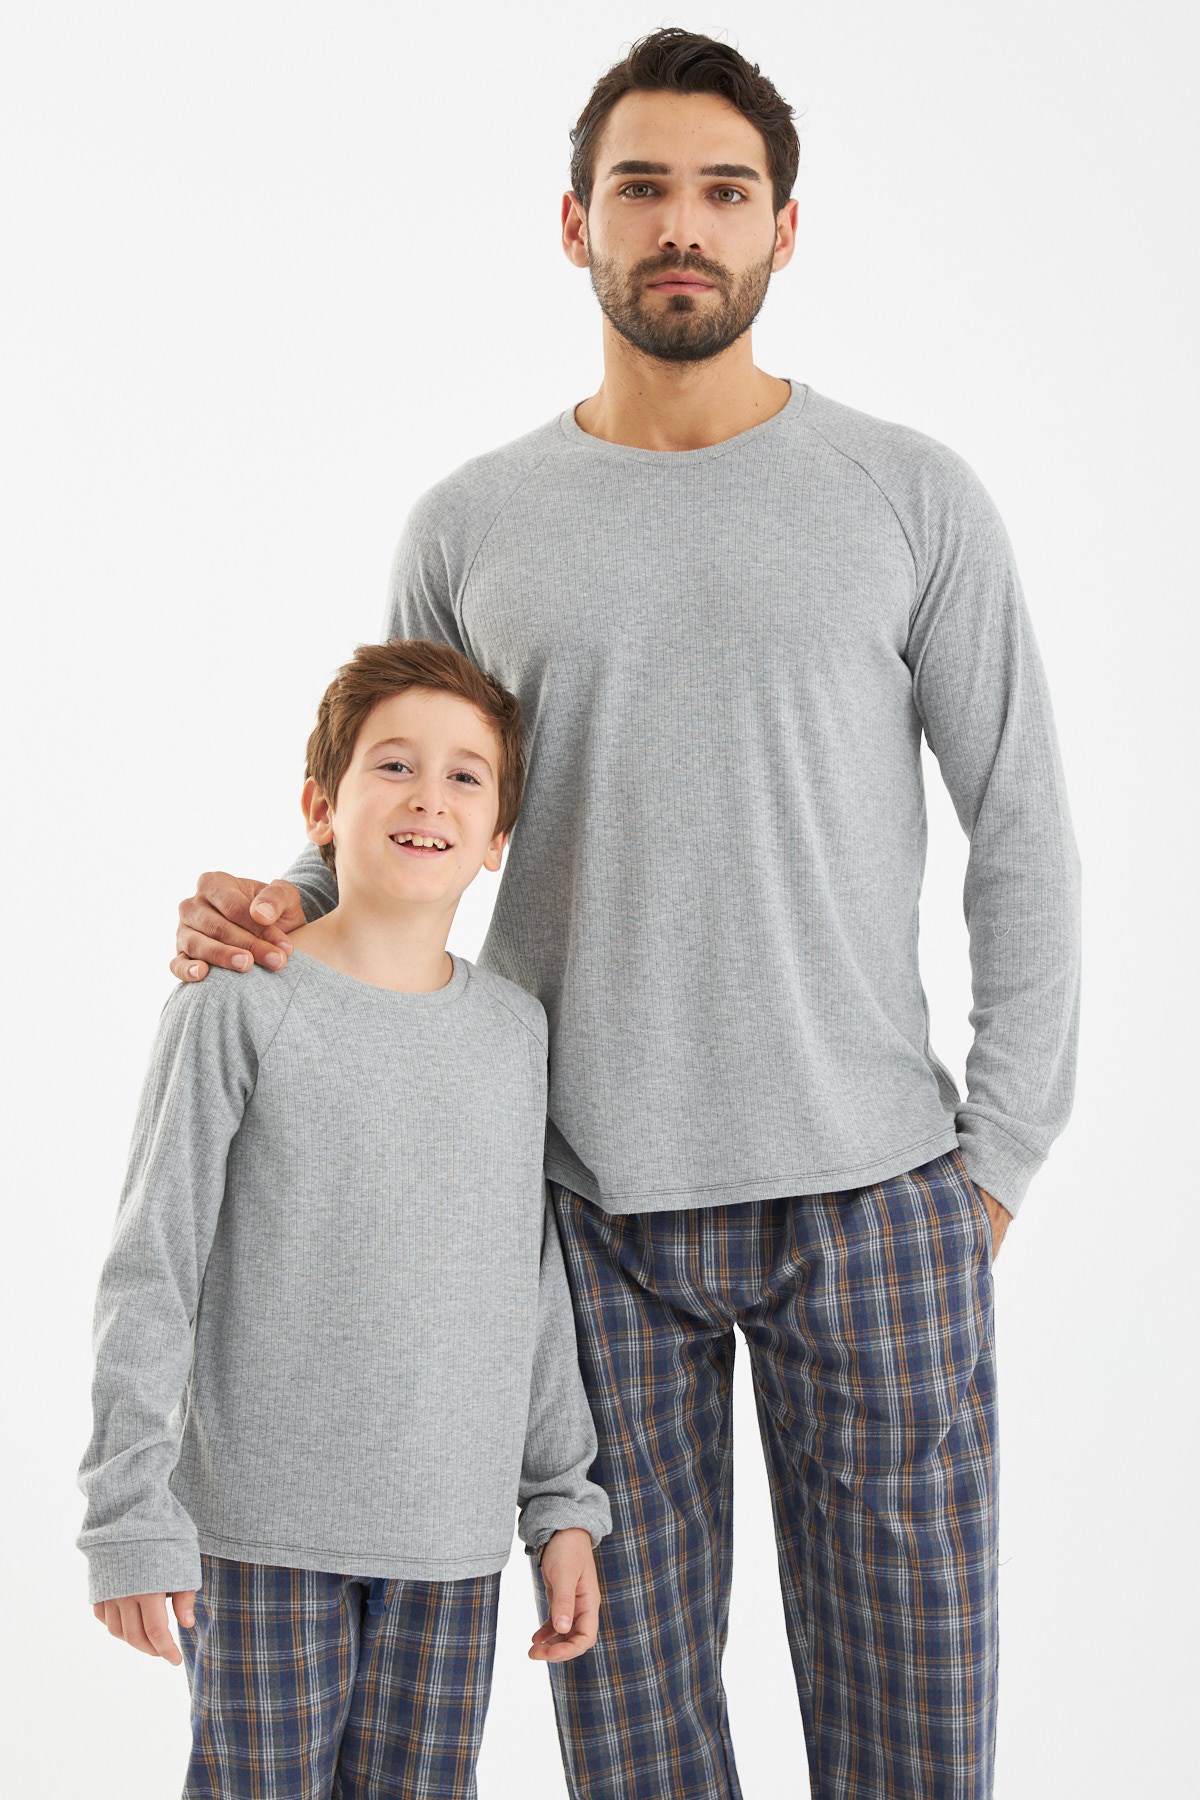 Termal strıped pijama takımı Baba oğul ayrı ayrı satılır fıyatları farklıdır